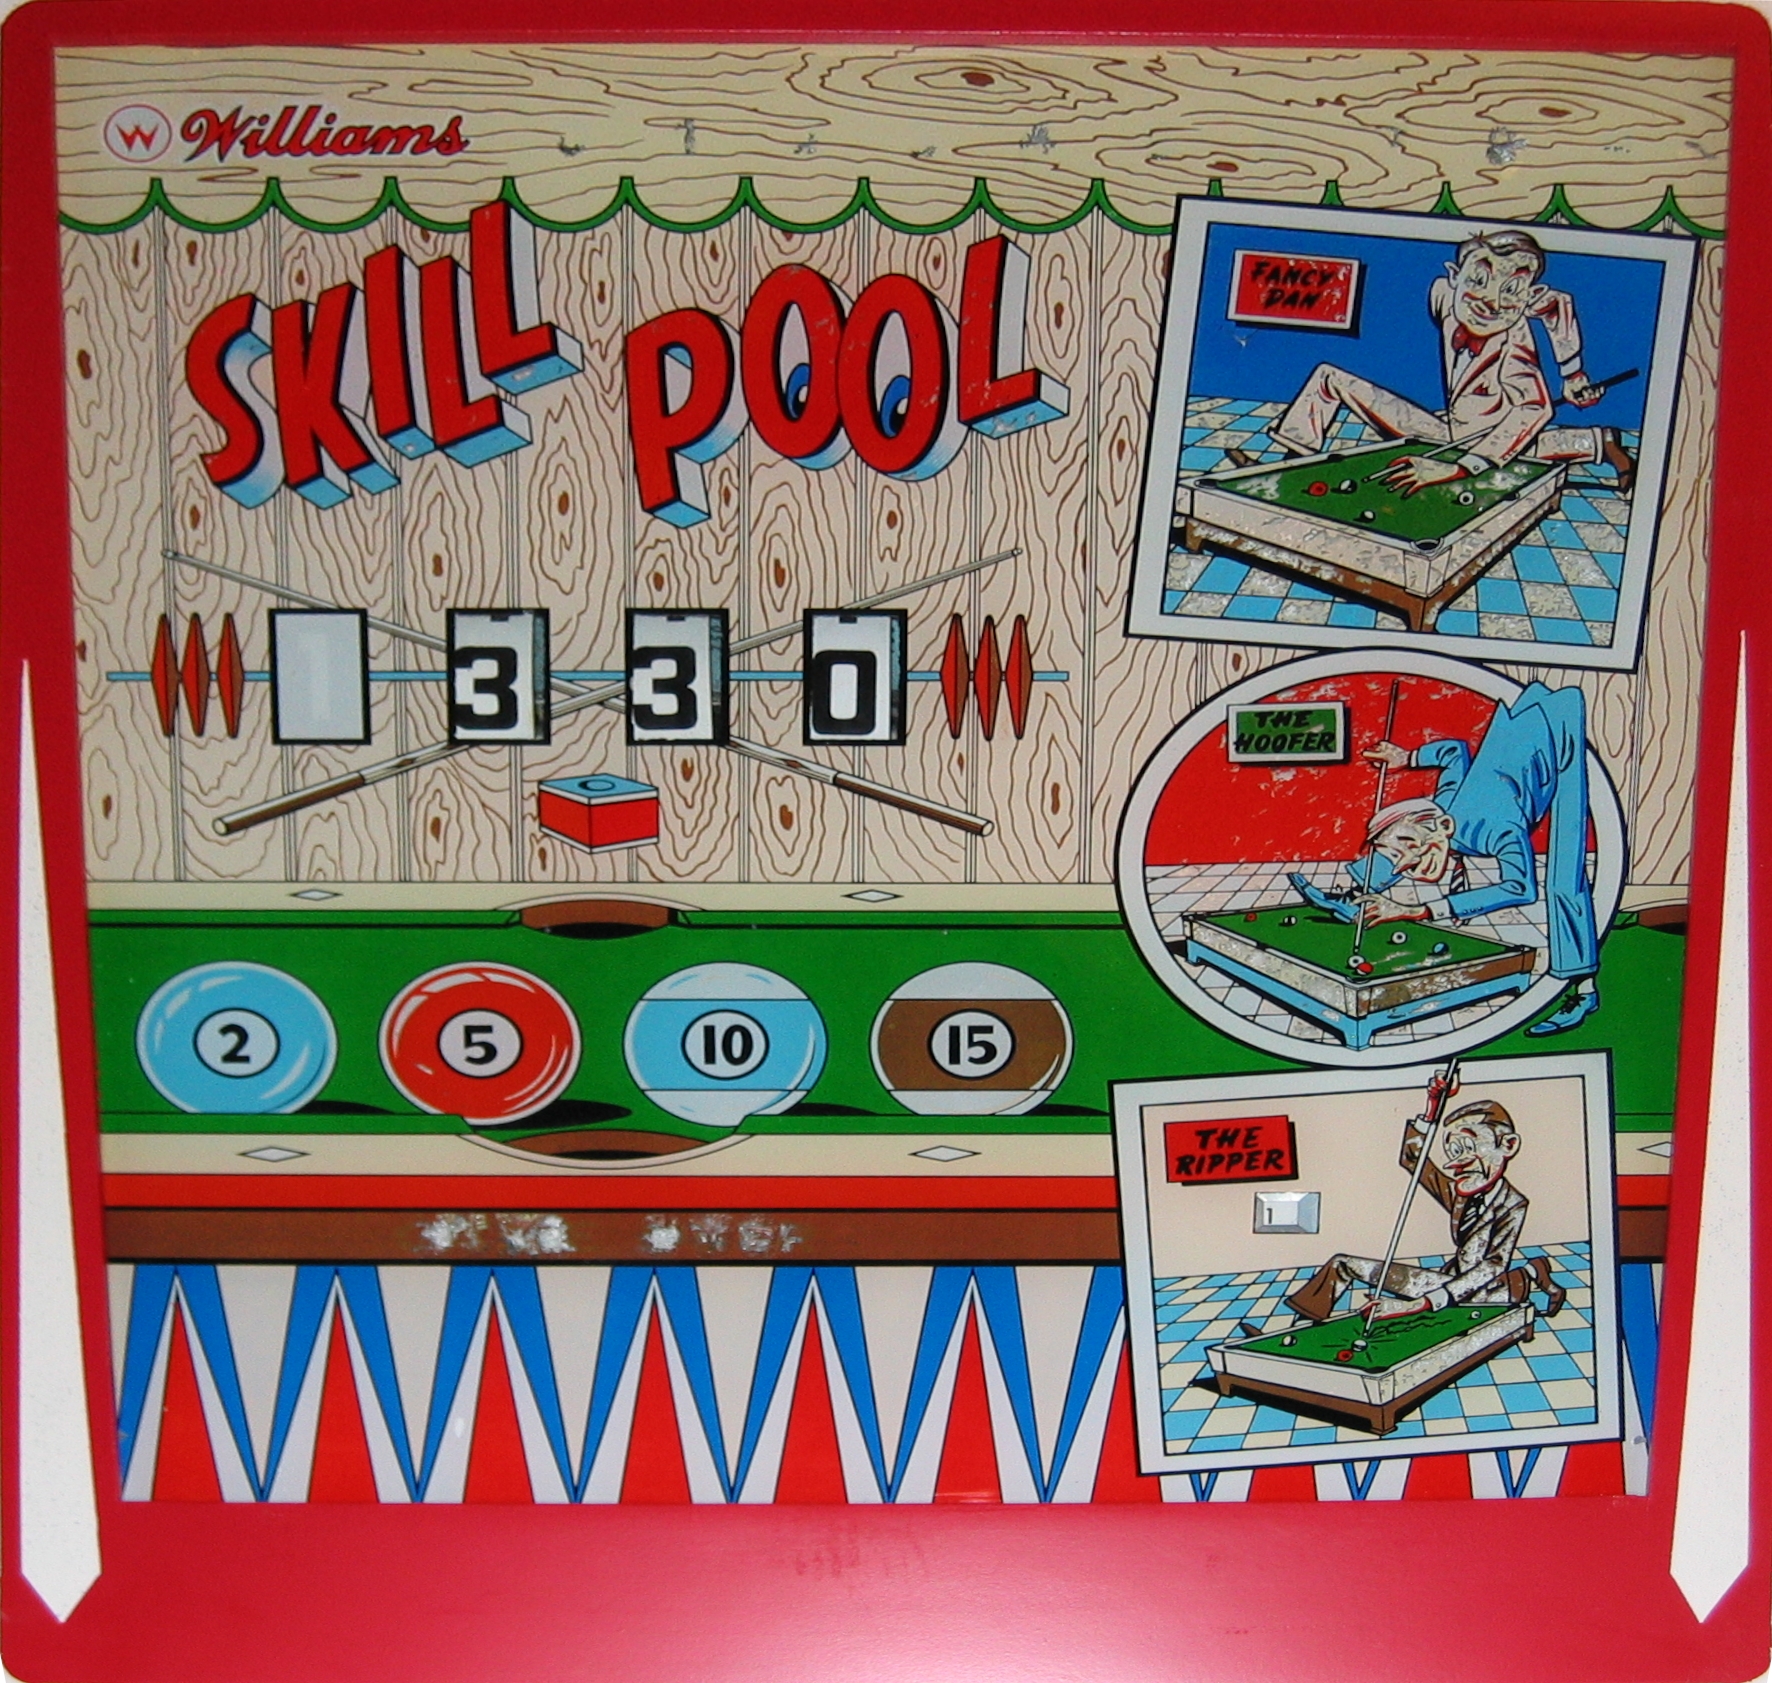 Skill Pool (Williams, 1963) (PN) Backglass